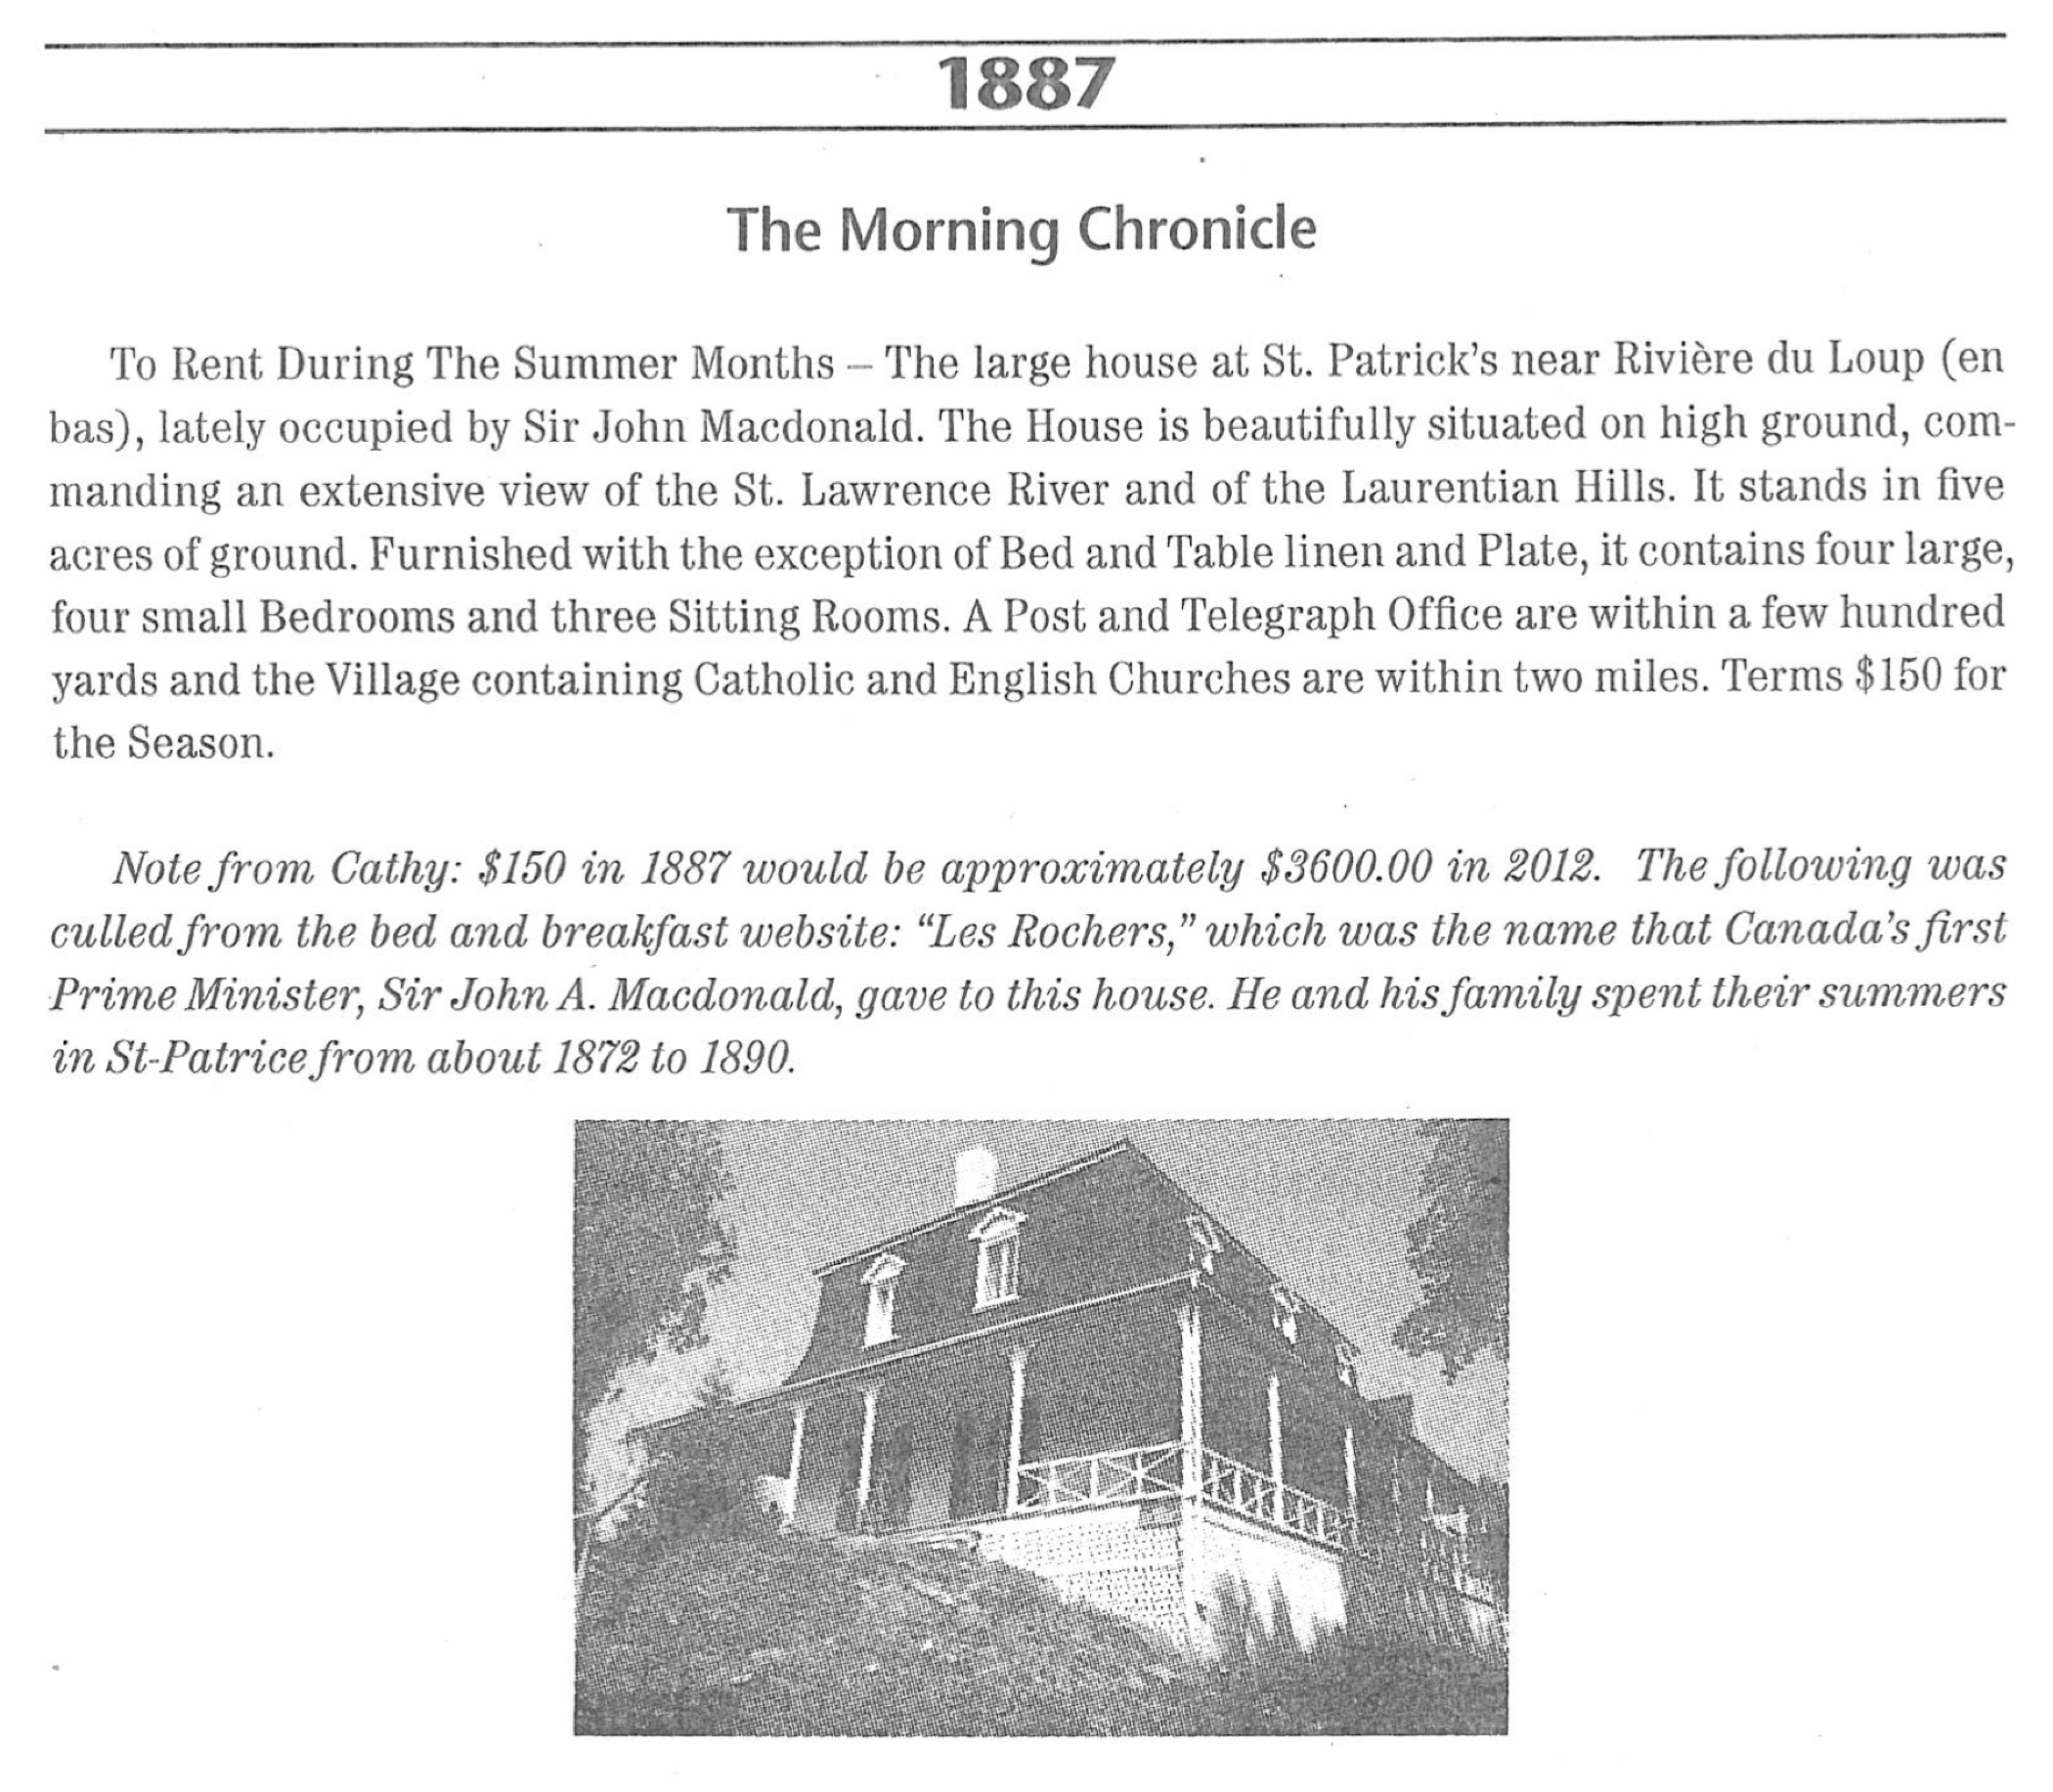 Photocopie d'une réclame dans un journal (le Quebec Morning Chronicle) annonçant une maison à louer (la villa Les Rochers), affichant une photo de la propriété. 